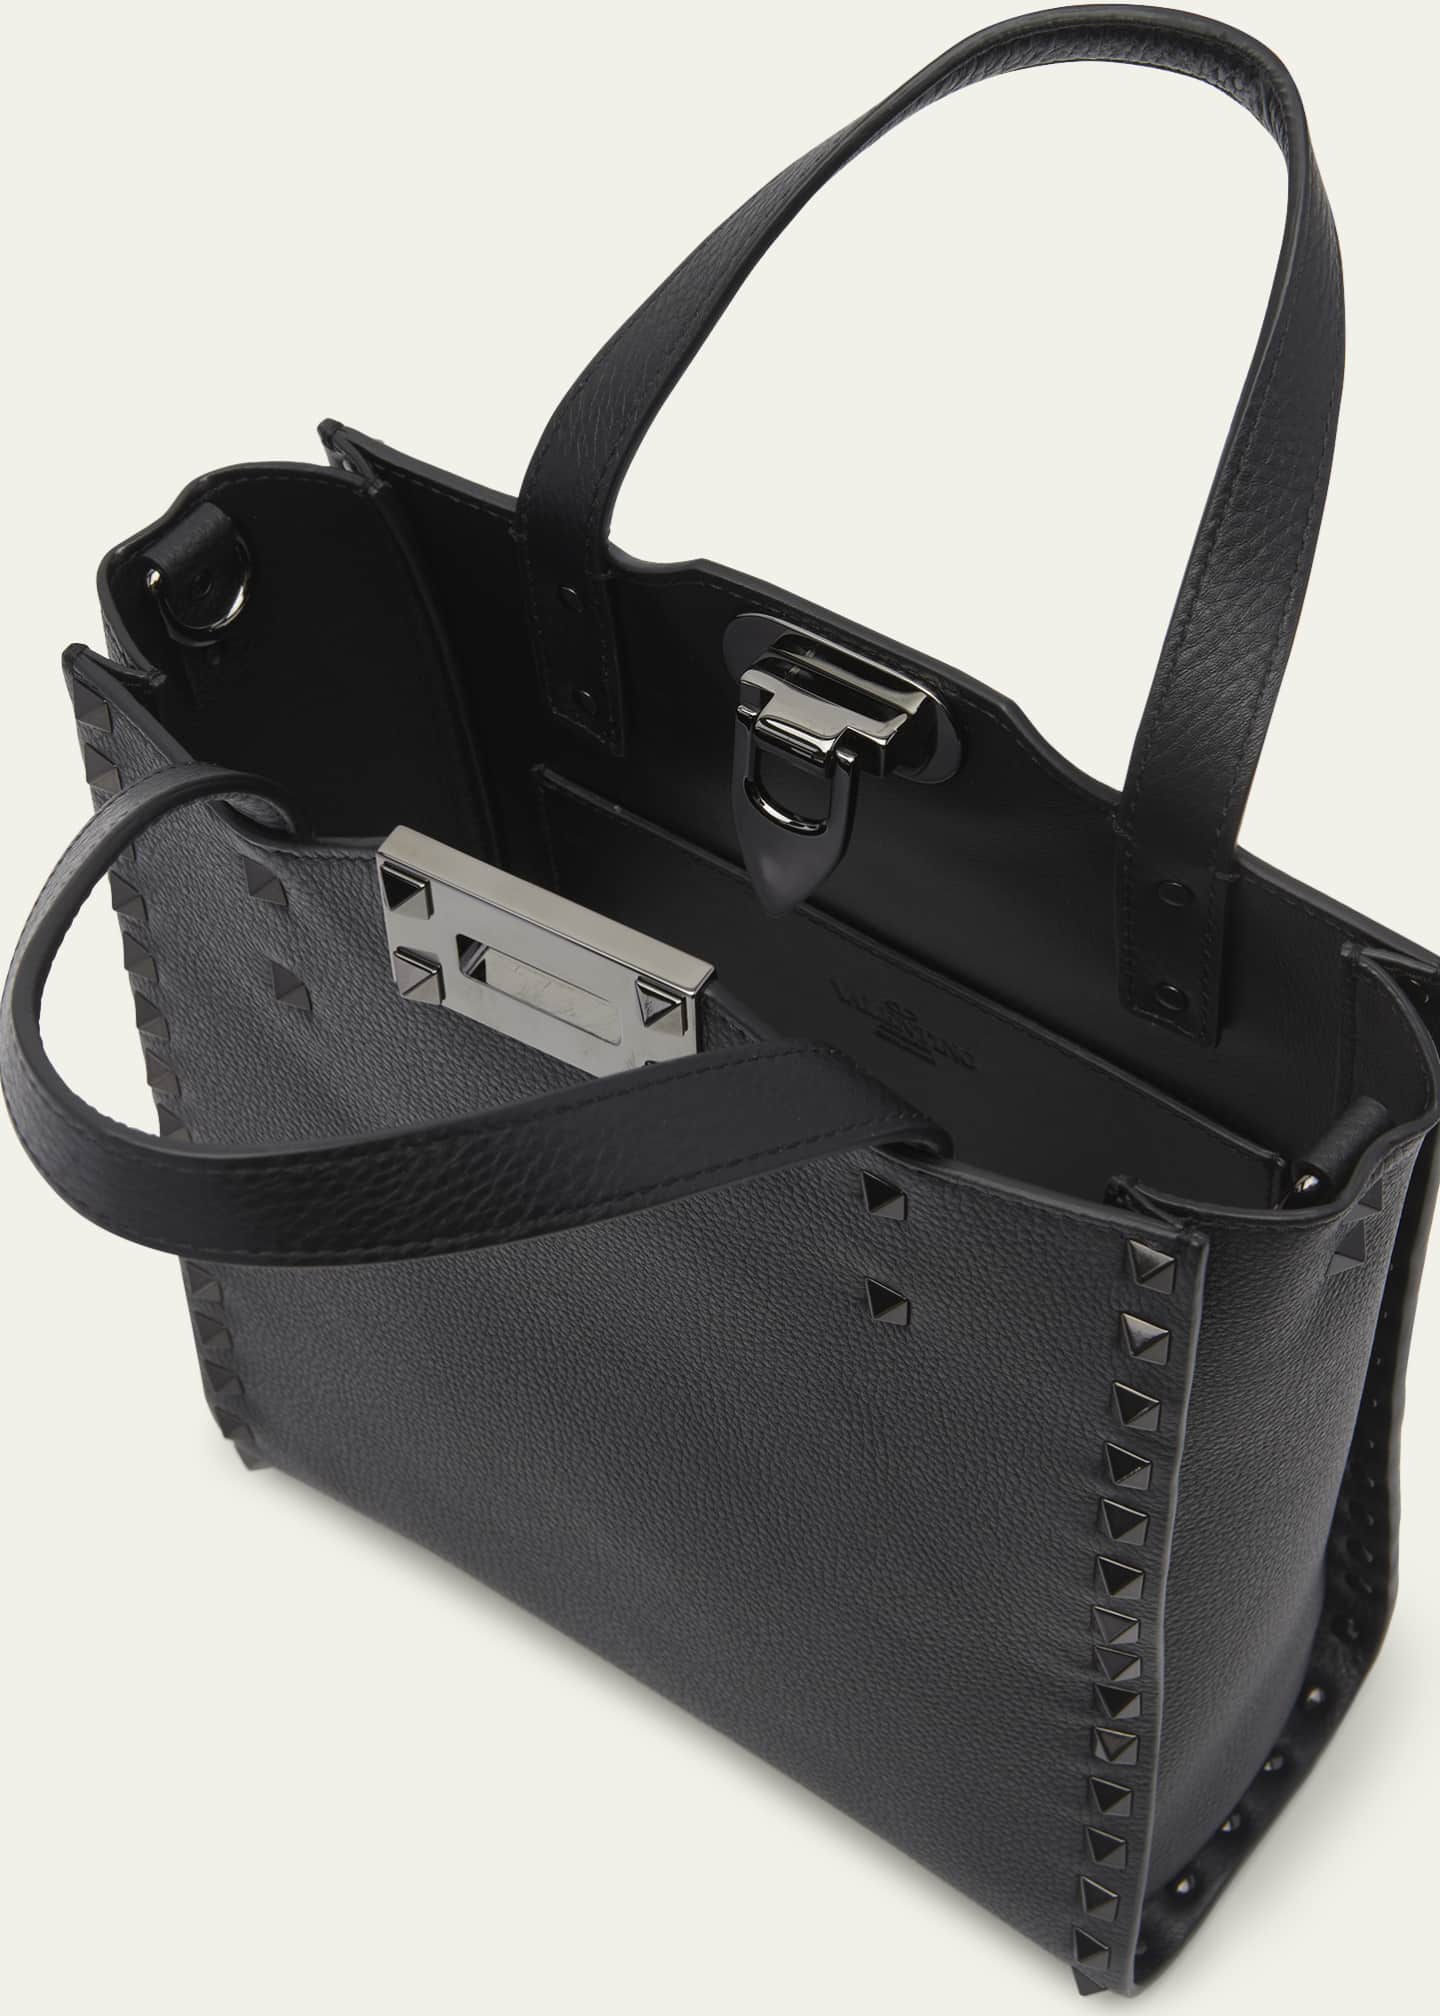 Rockstud Small Leather Tote Bag in Beige - Valentino Garavani